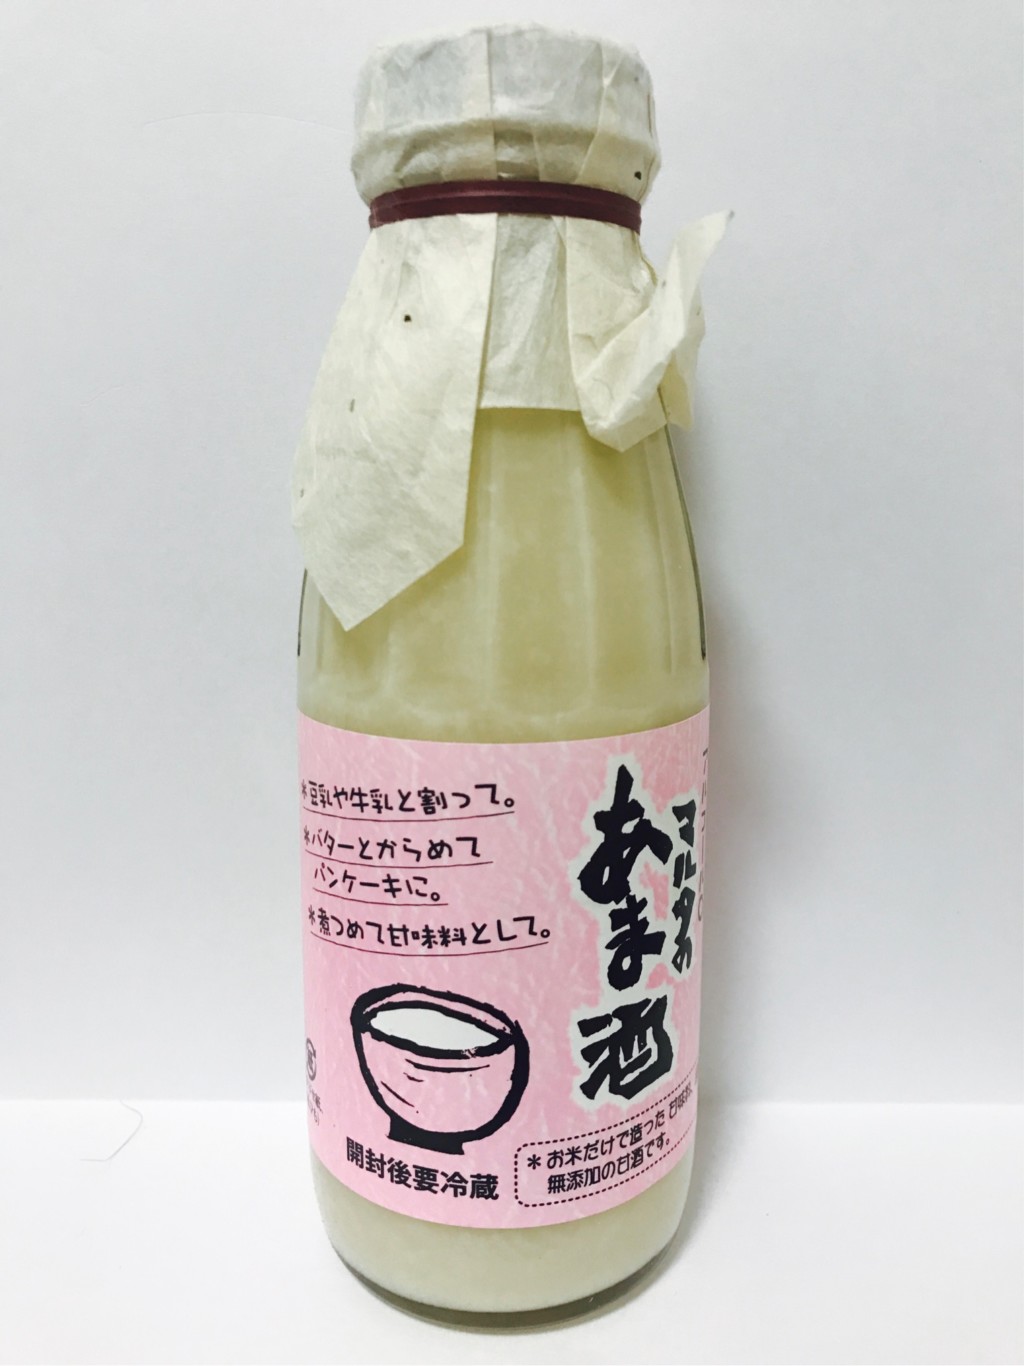 マルタ醸造の濃縮タイプの米麹甘酒『マルタのあま酒』